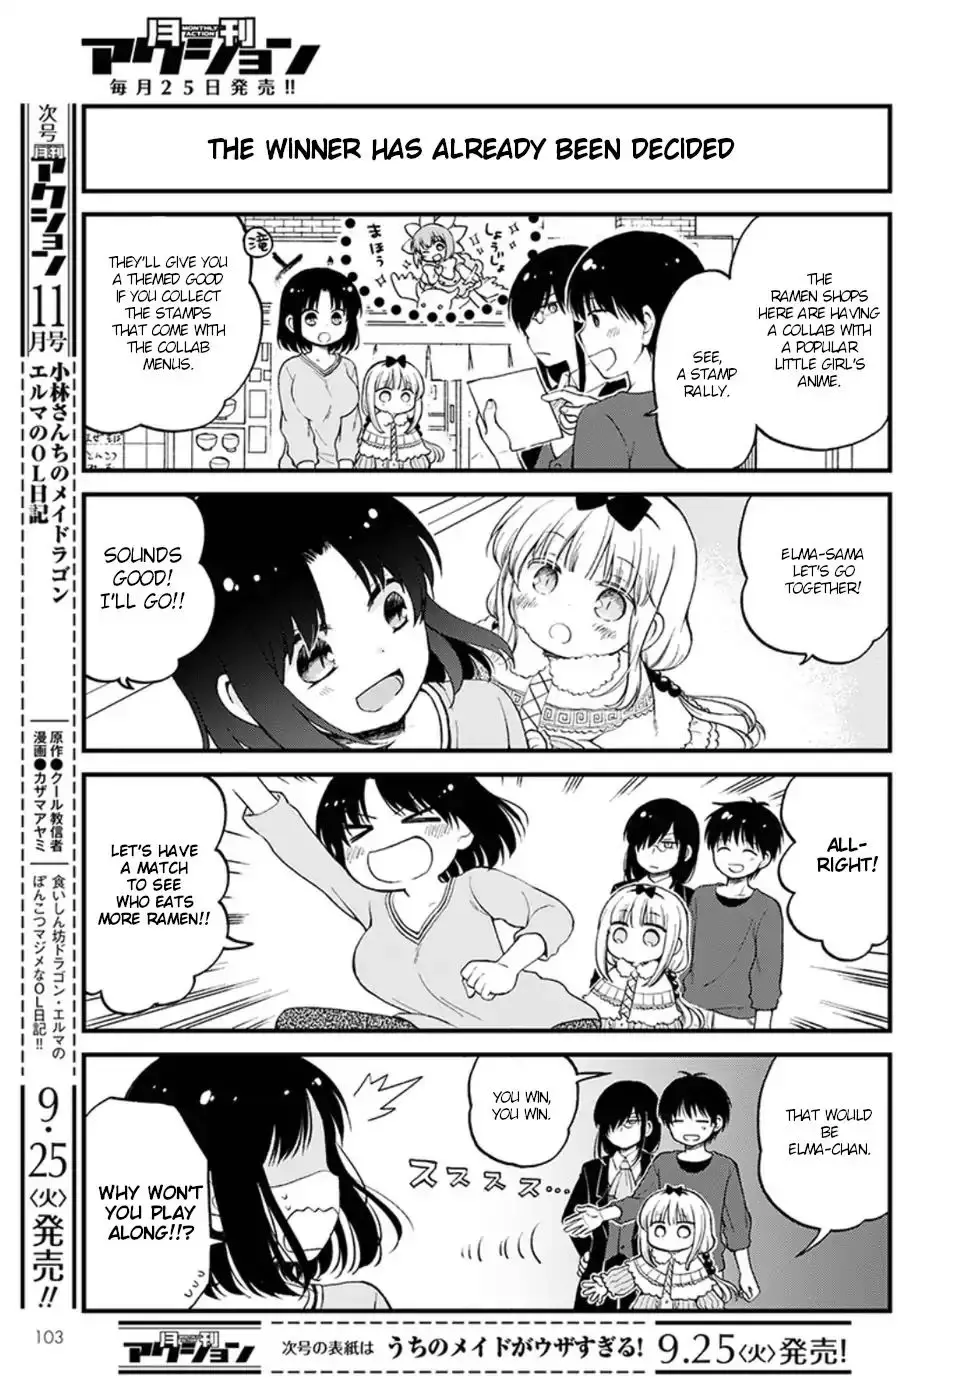 Kobayashi-San Chi No Maid Dragon: Elma Ol Nikki - 13 page 3